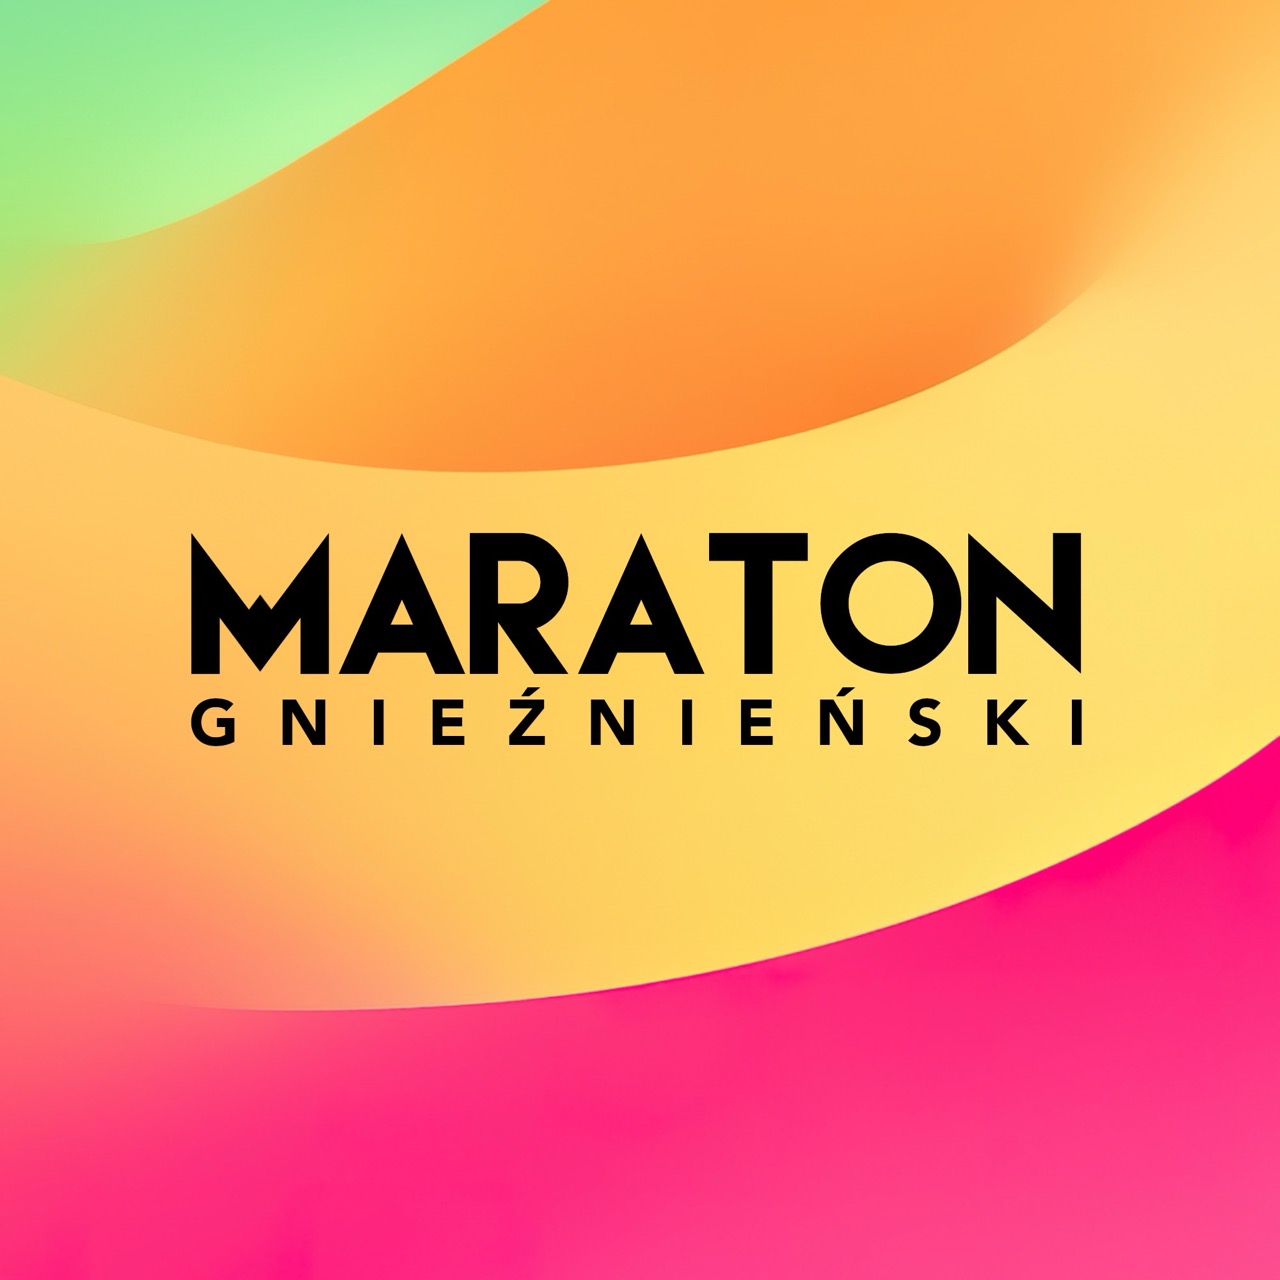 Źródło: Maraton Gnieźnieński